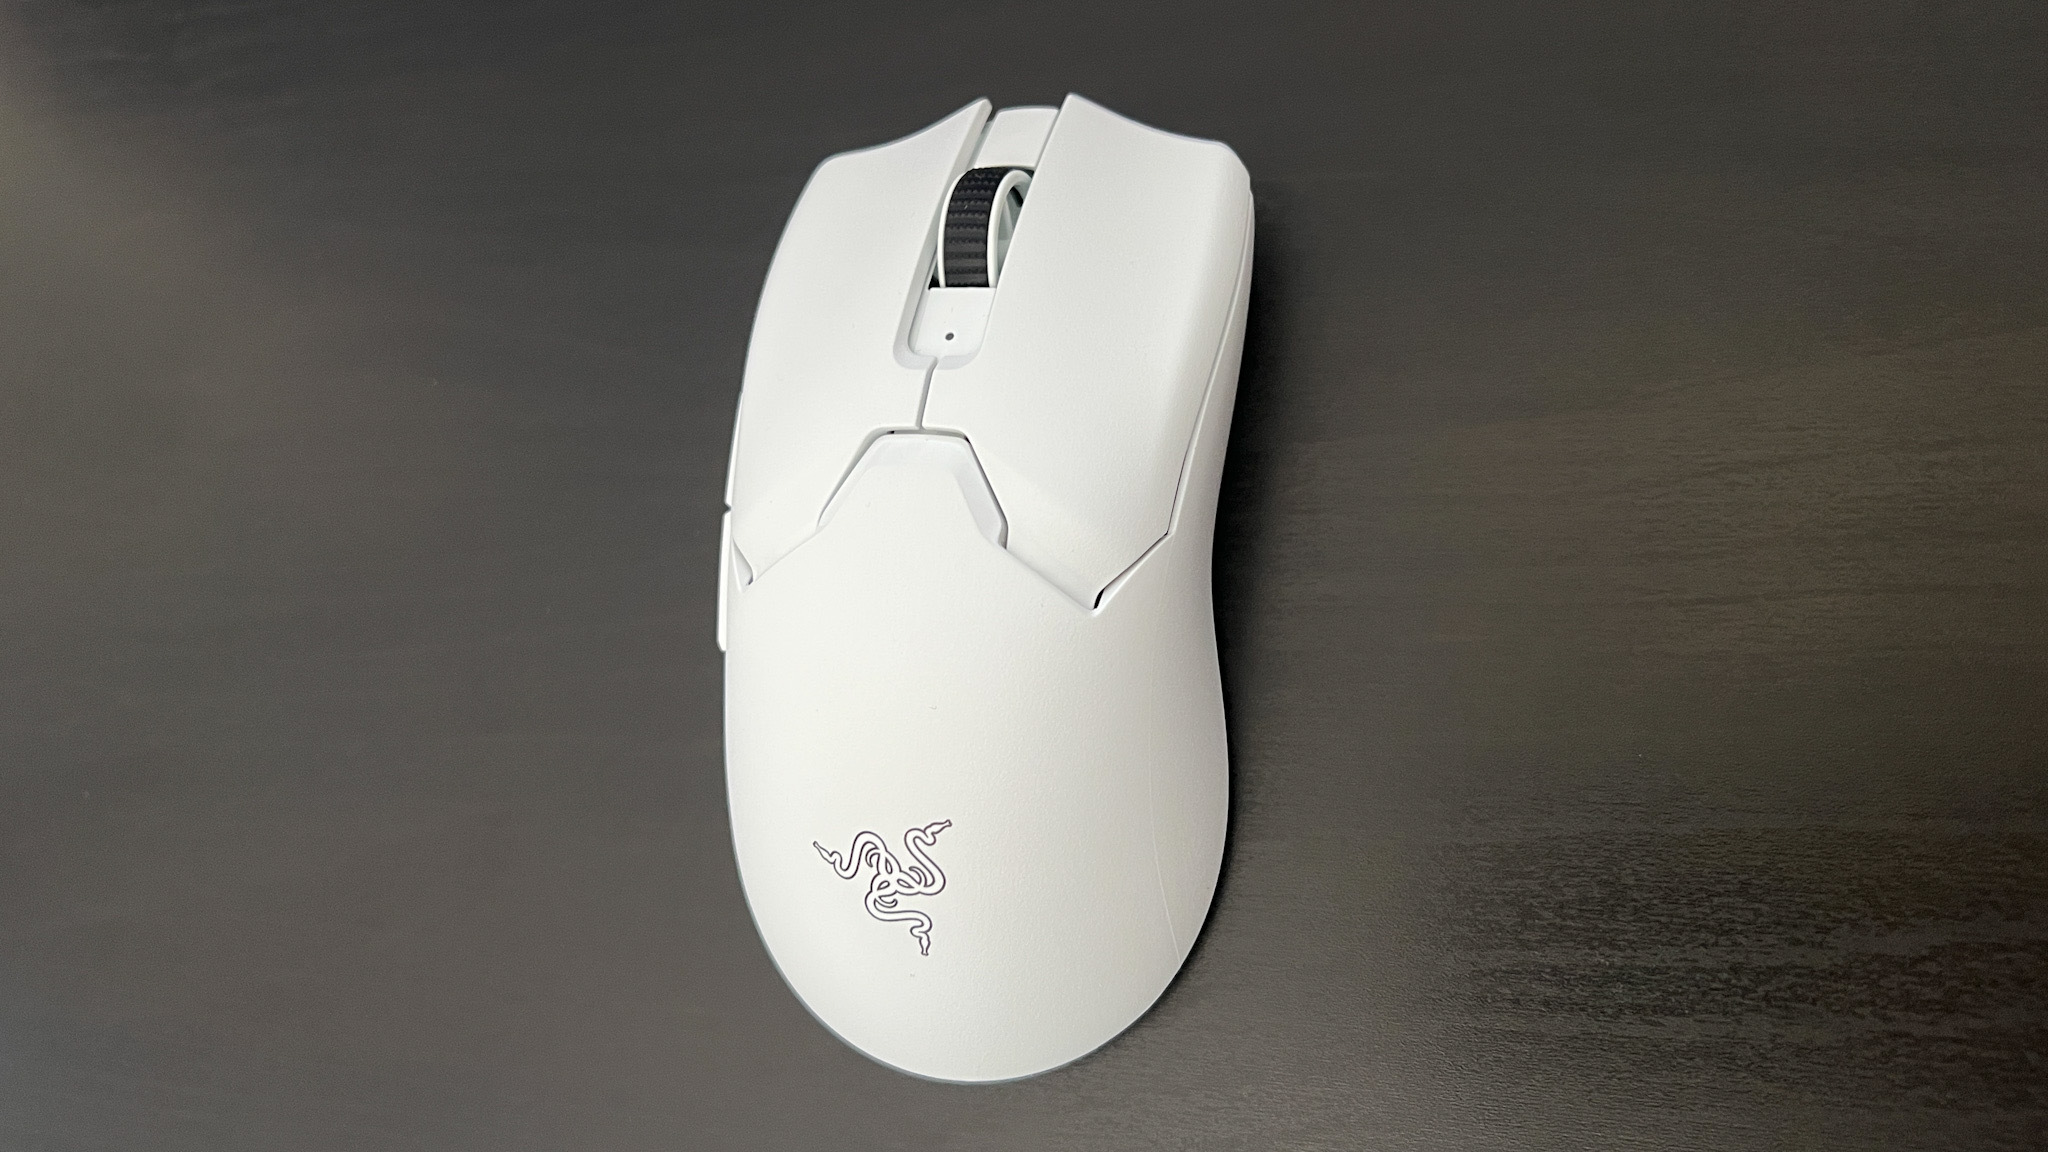 Finished my custom White Razer Naga Chroma mouse to go along